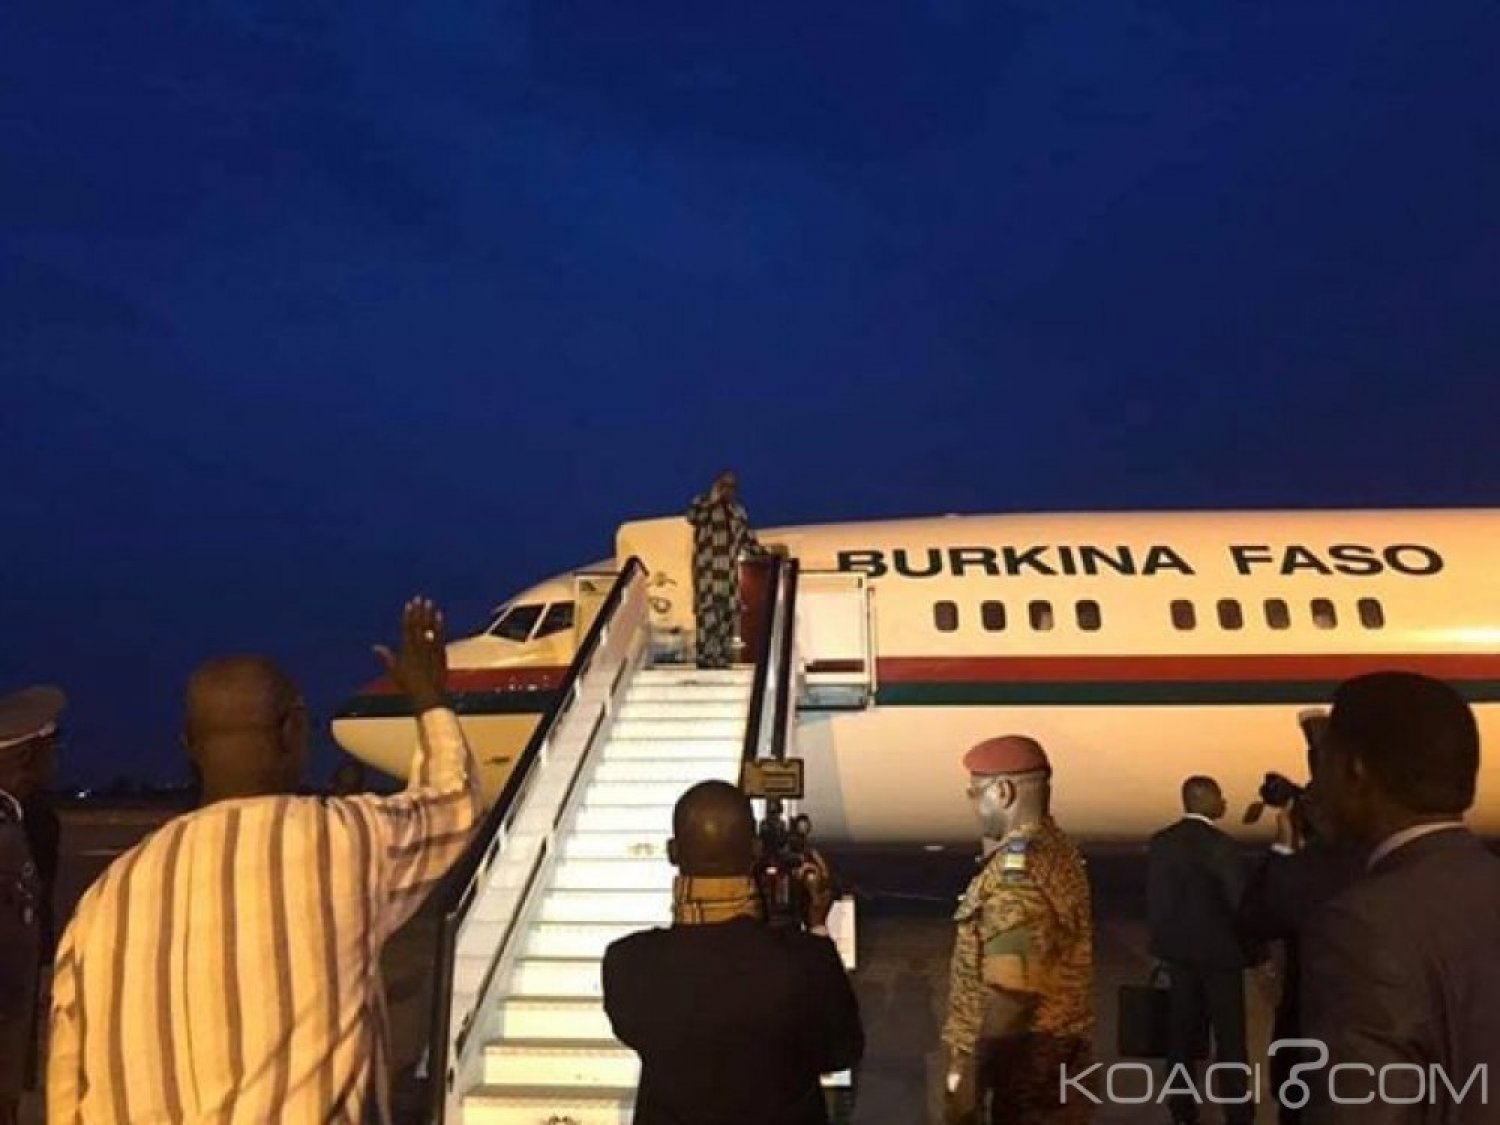 Burkina Faso : Le président Kaboré en visite de travail en Allemagne